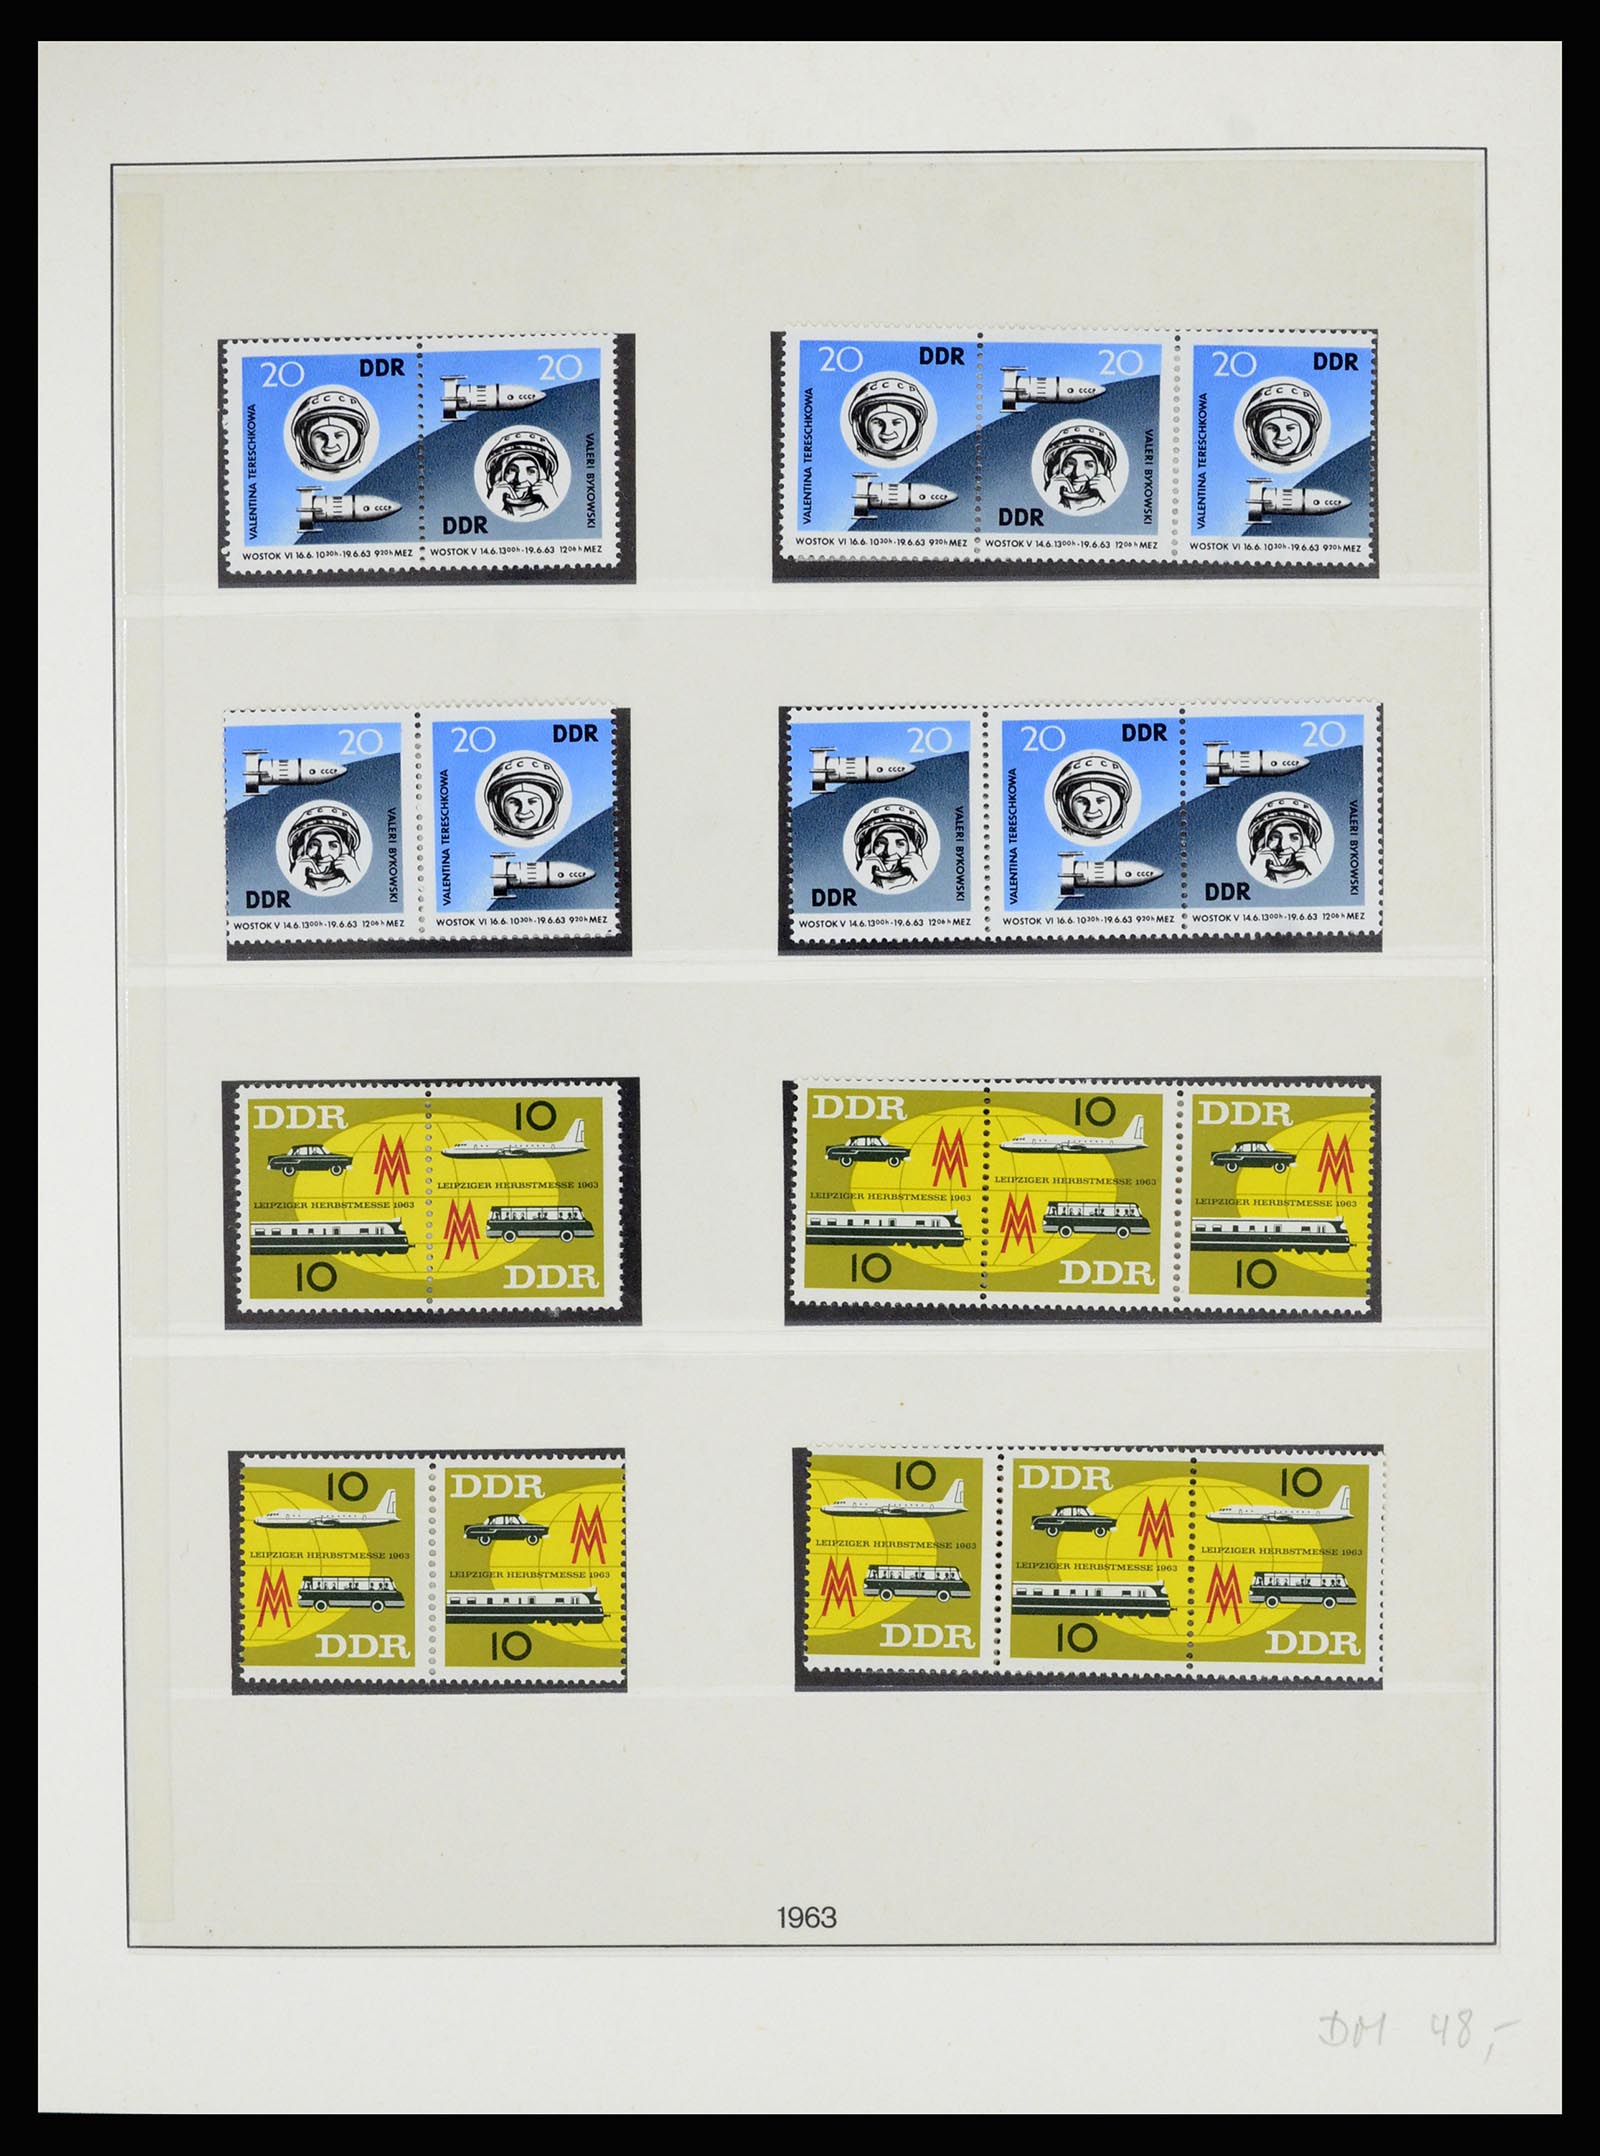 36879 020 - Postzegelverzameling 36879 DDR combinaties 1955-1981.